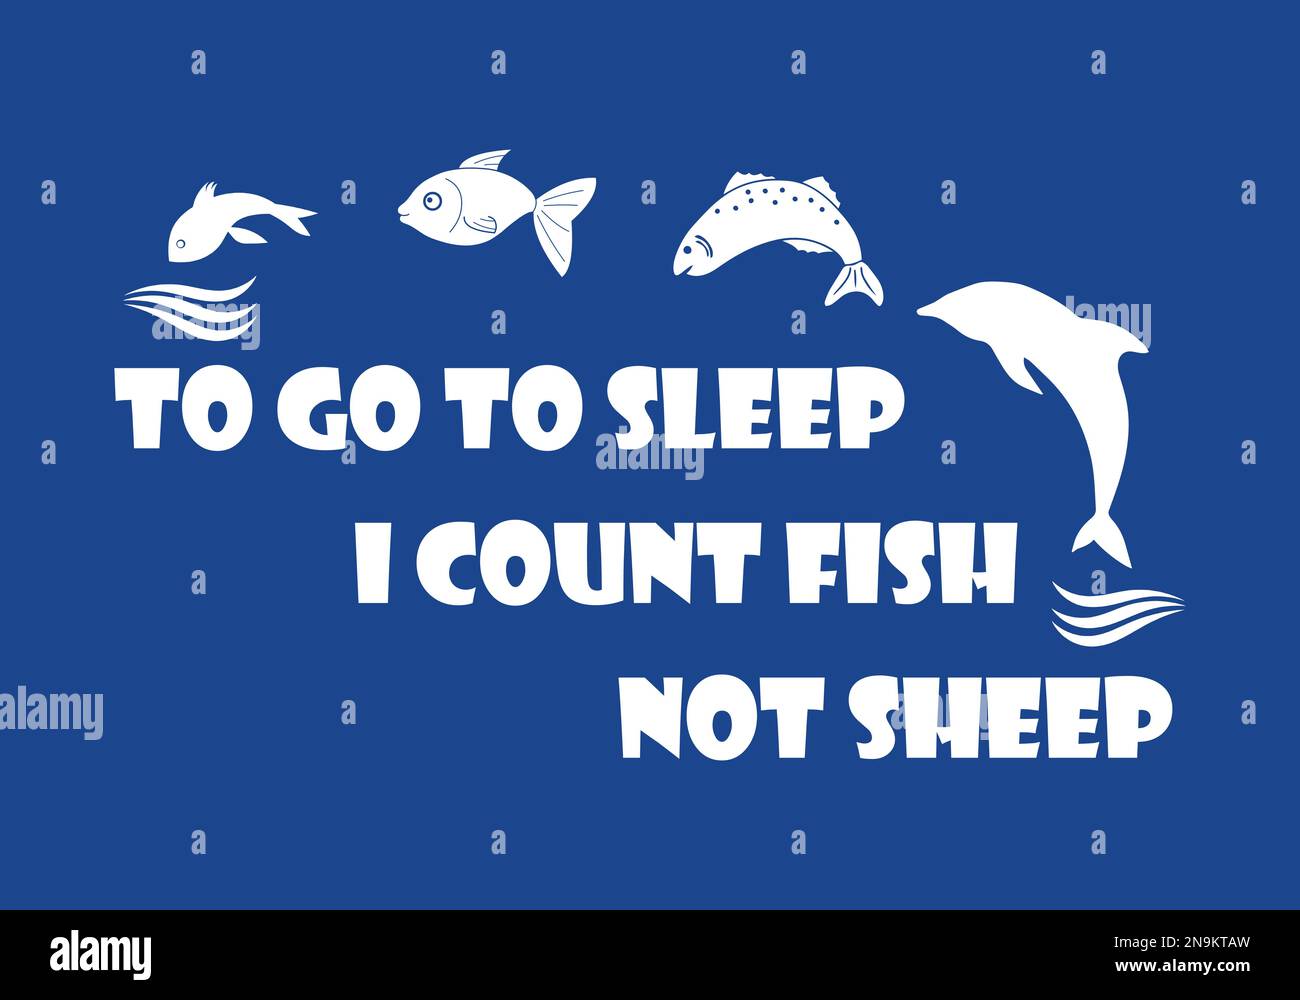 Divertente disegno di citazione di pesca per la t-shirt. Per andare a dormire conte pesci non pecore. Illustrazione Vettoriale